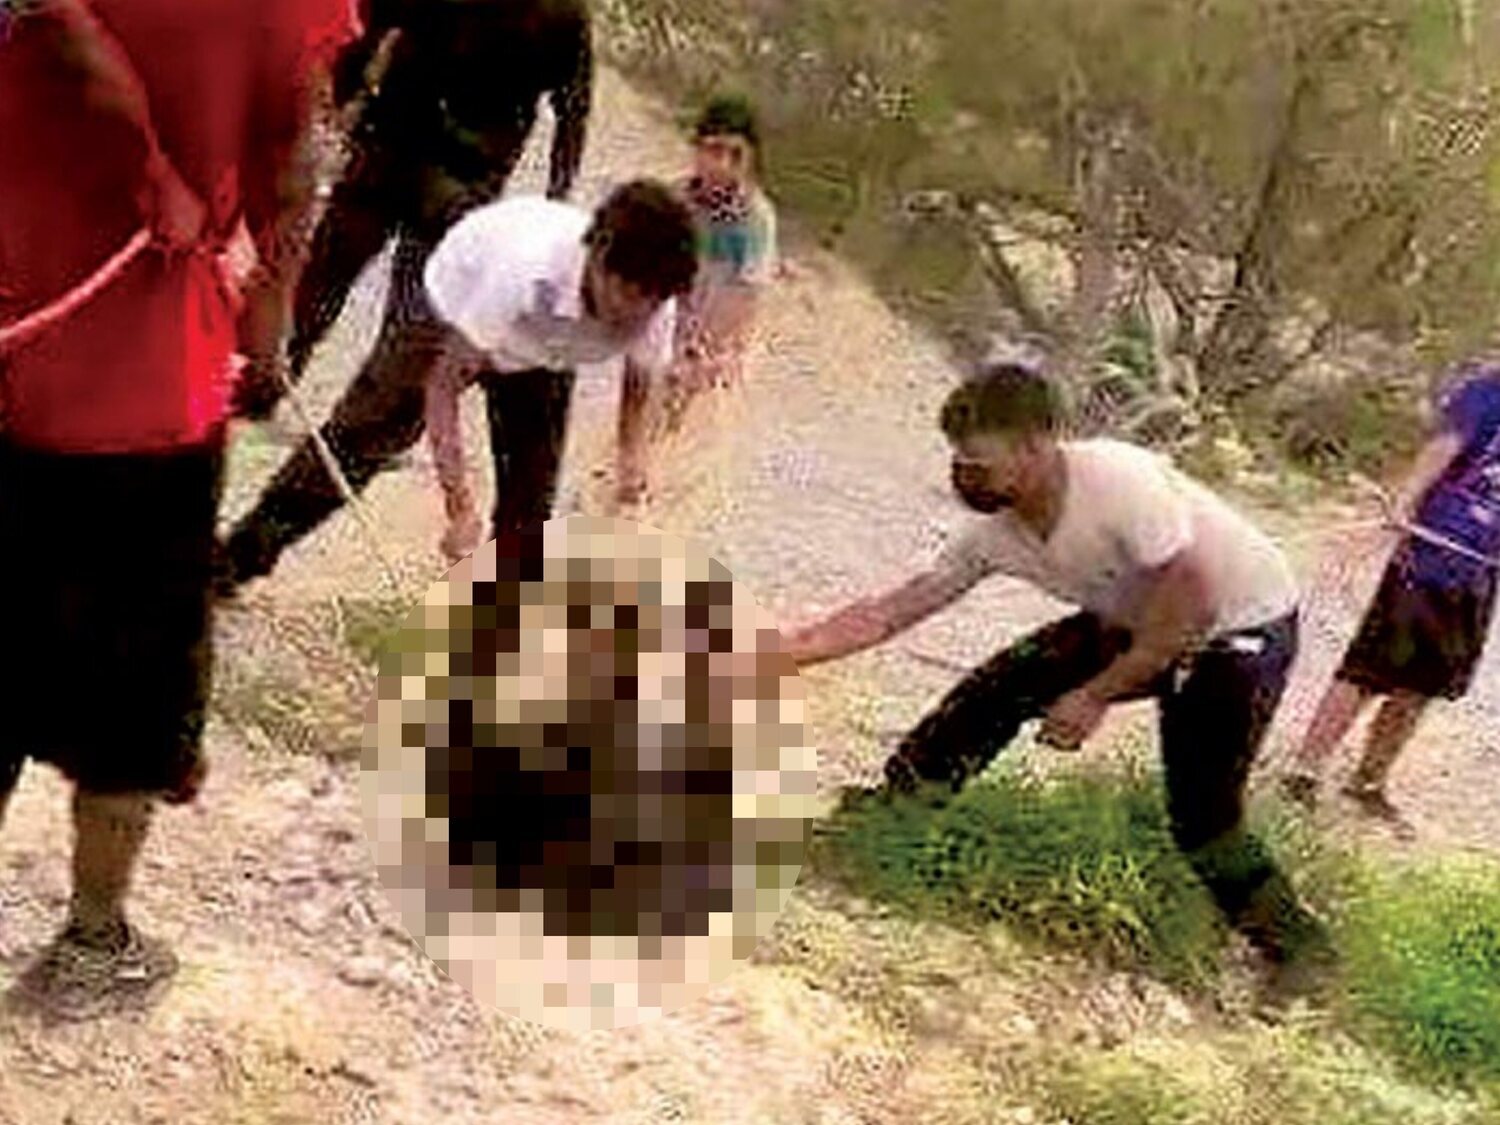 Graban a un grupo de hombres torturando y asesinando a un osezno mientras unos policías contemplan la escena sin intervenir